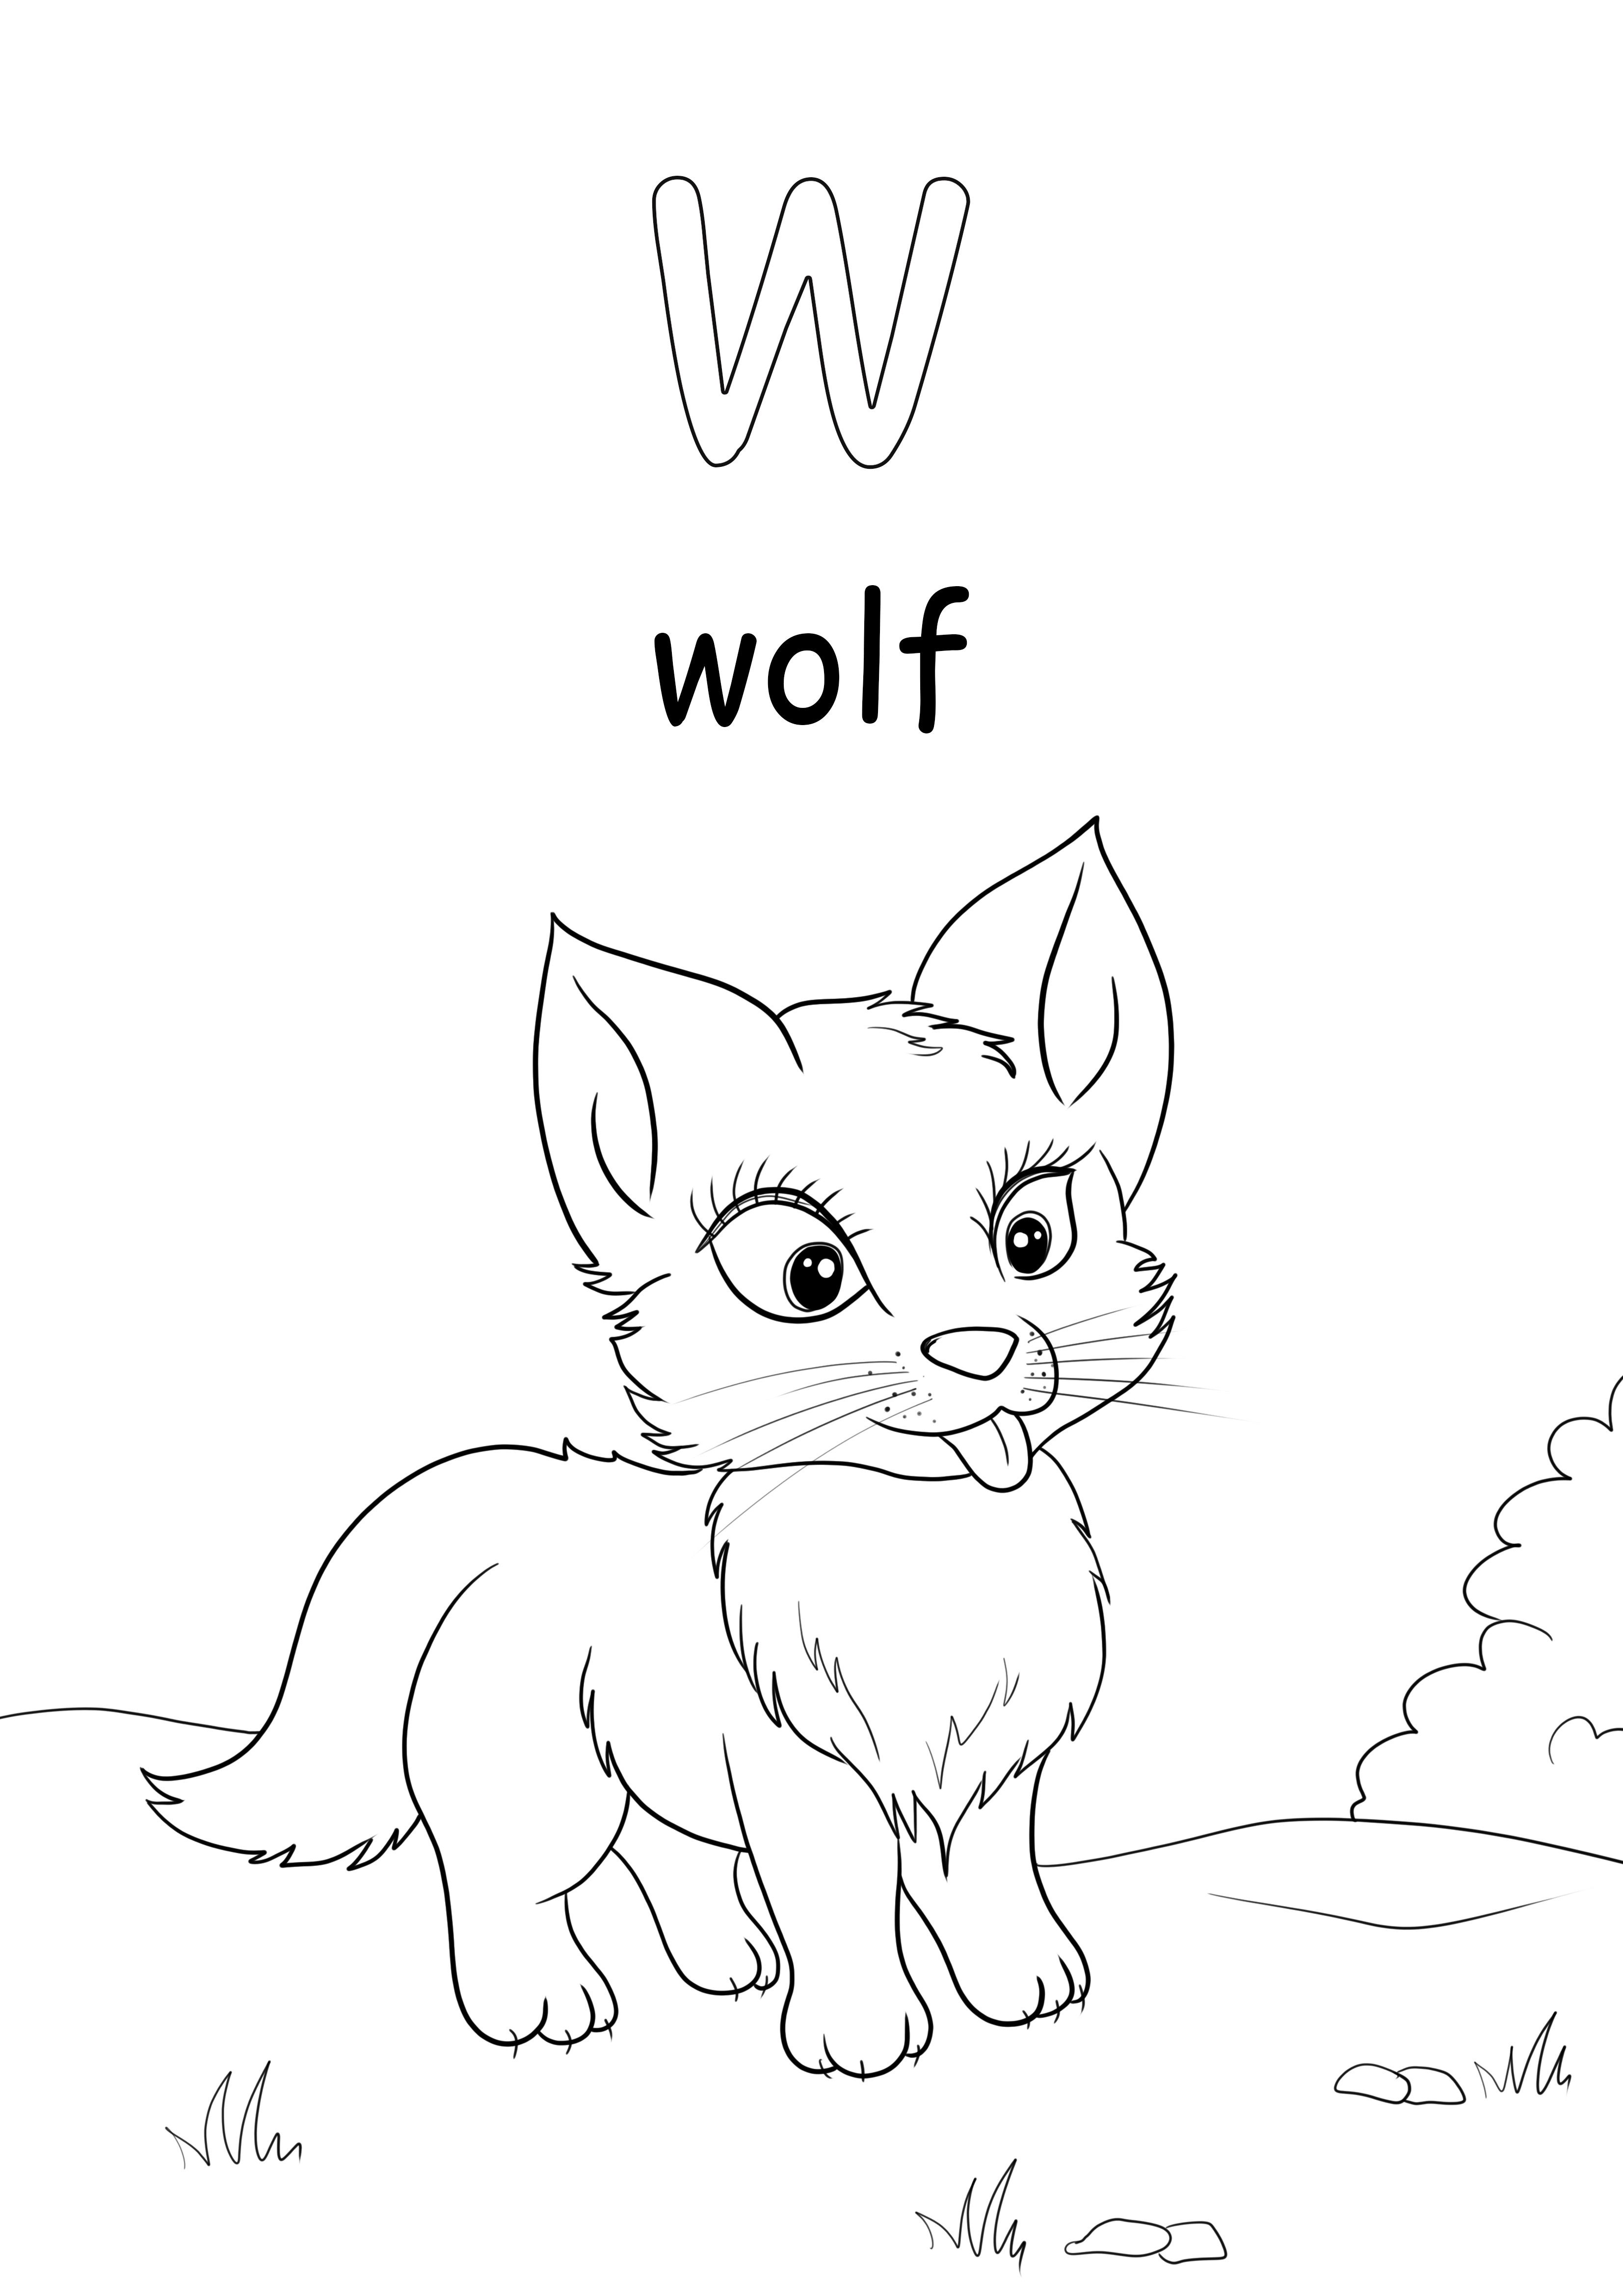 Huruf kecil w adalah untuk kata serigala untuk diunduh dan dicetak secara gratis